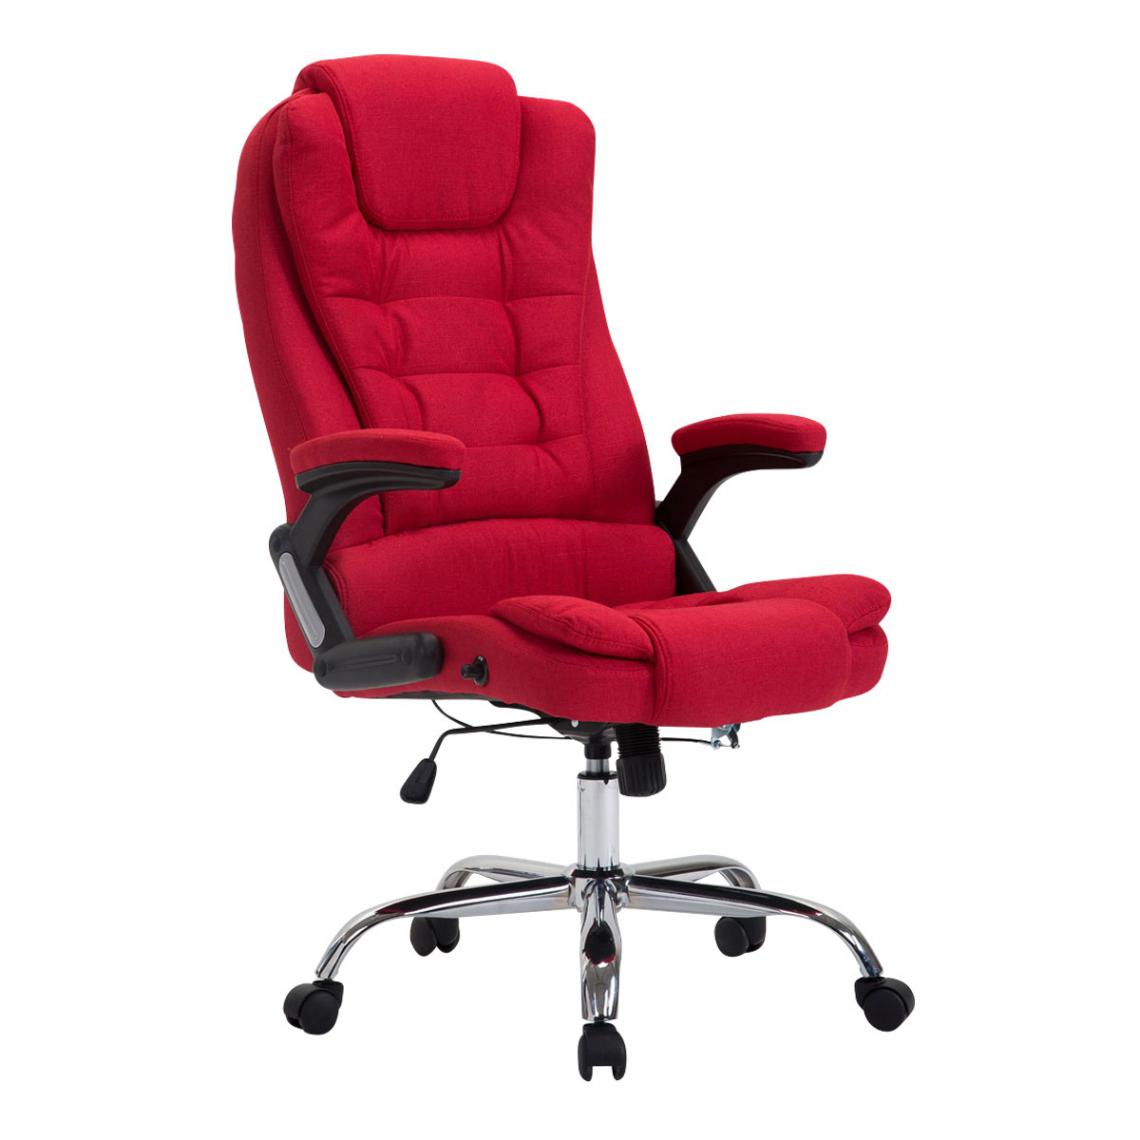 Icaverne - sublime Chaise de bureau reference Manama tissu couleur rouge - Chaises